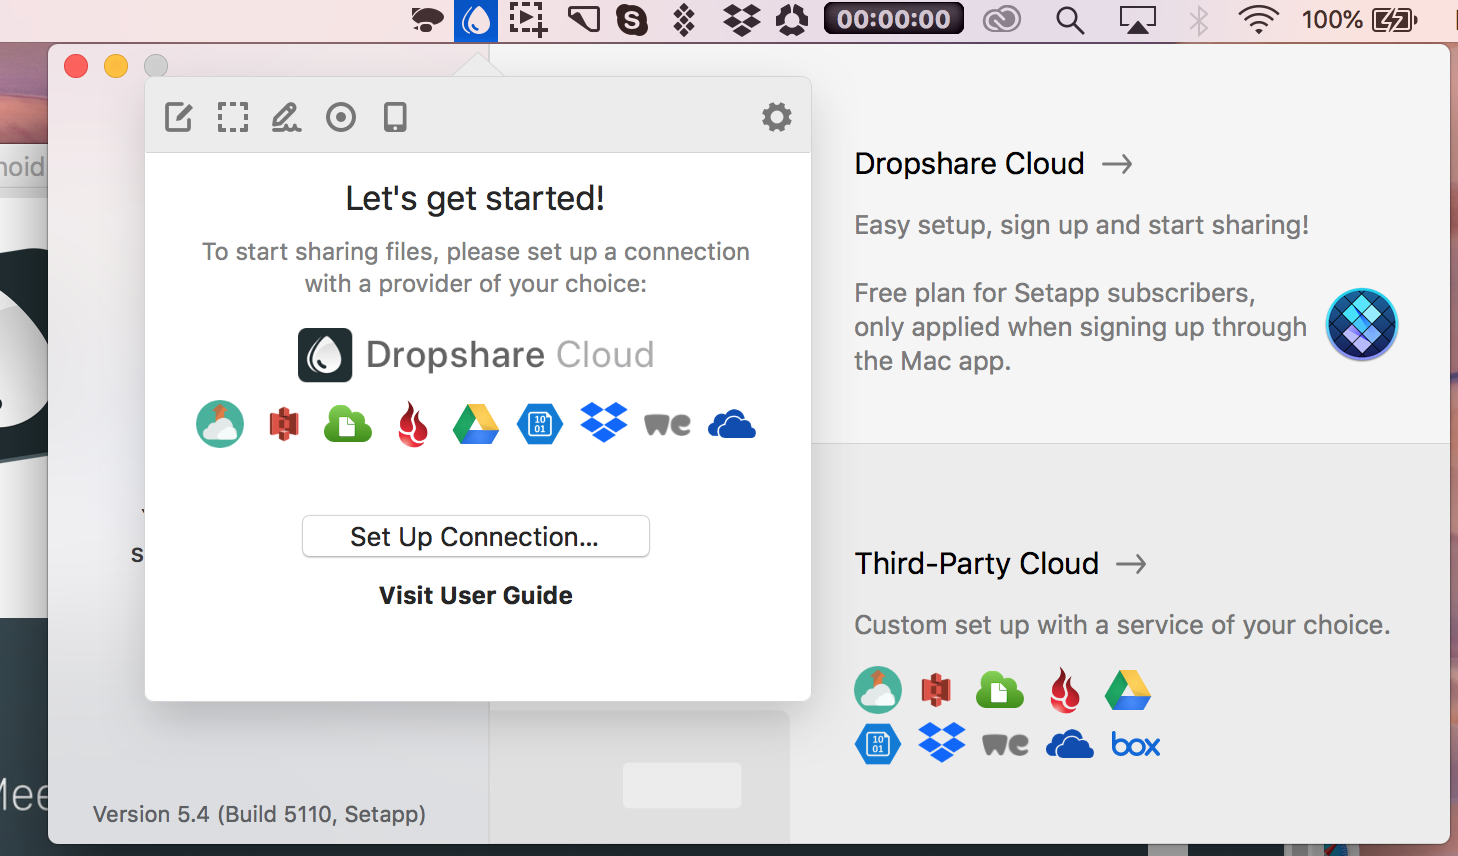 Suba capturas de pantalla al almacenamiento en la nube con la aplicación Dropshare